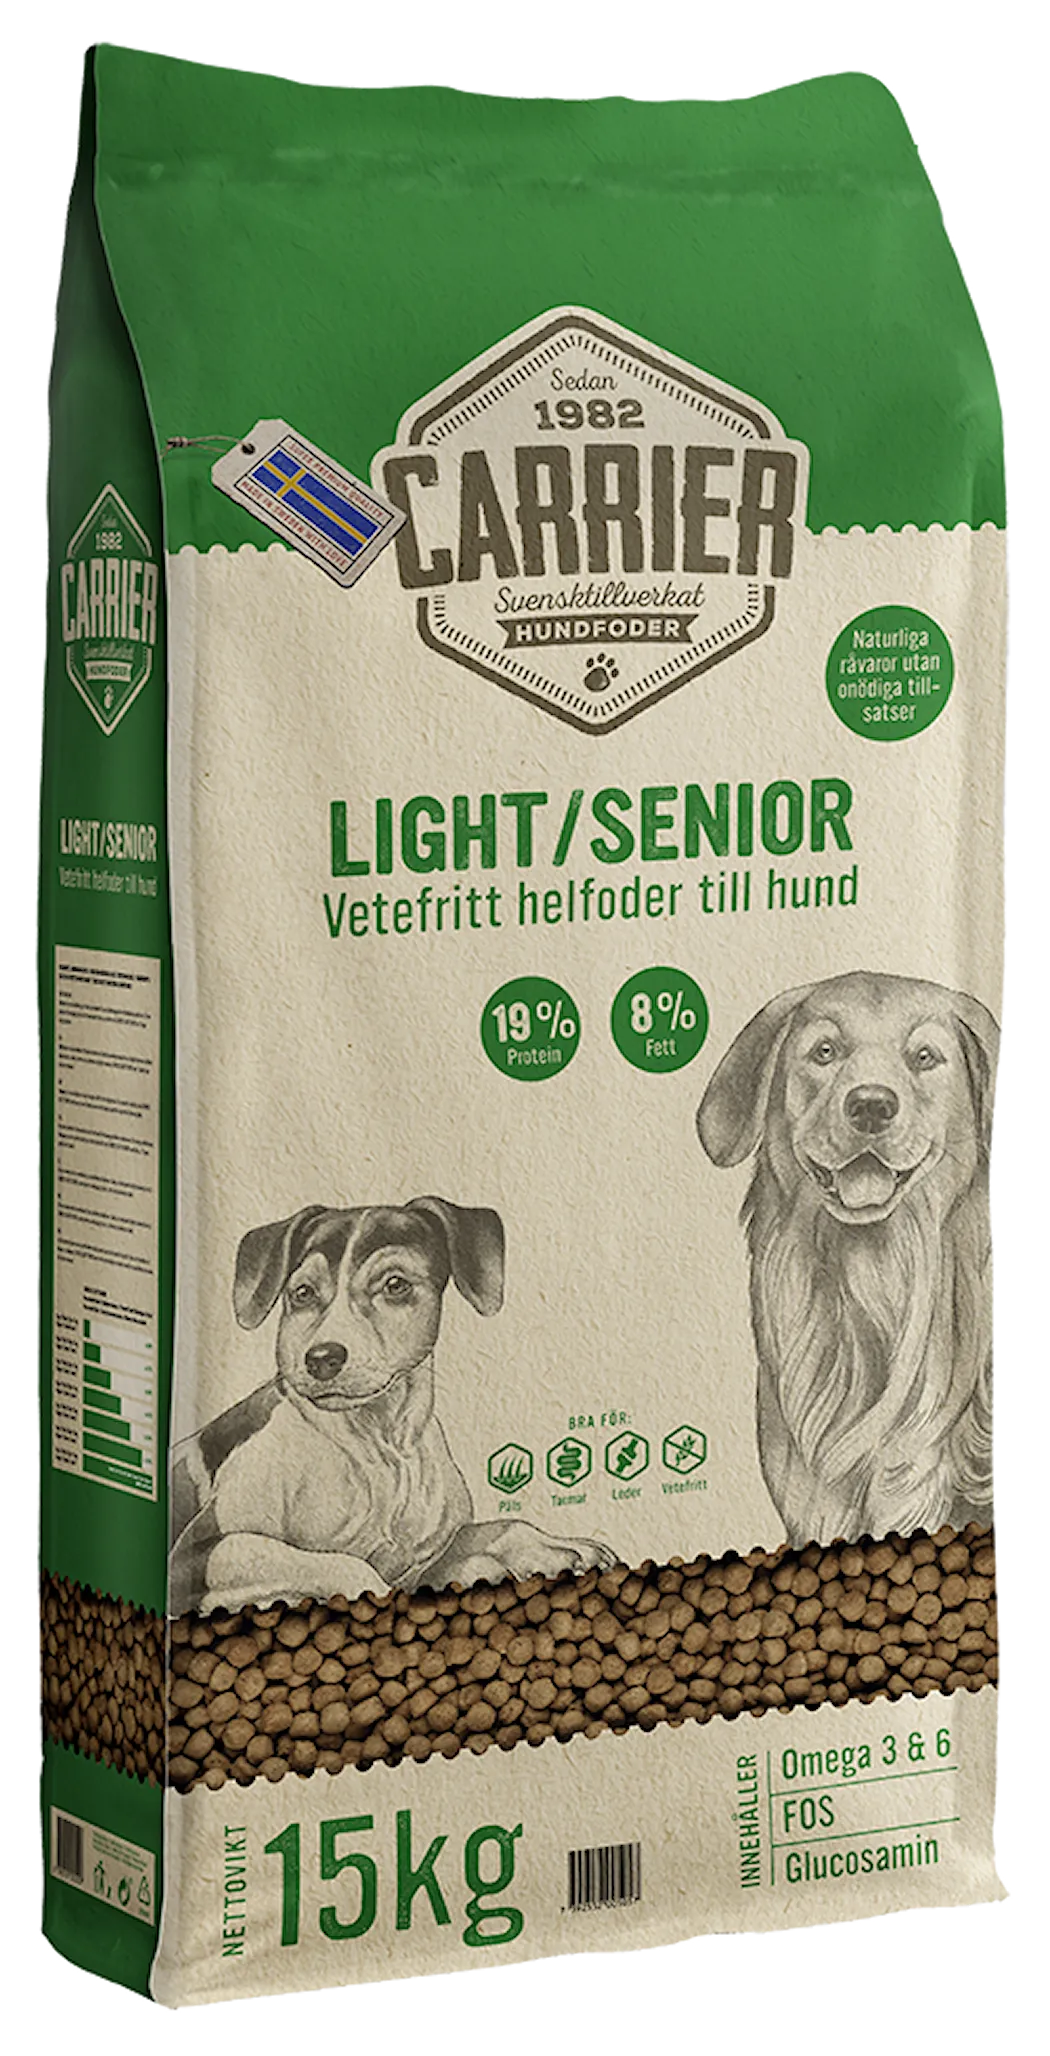 Carrier Light/ Senior